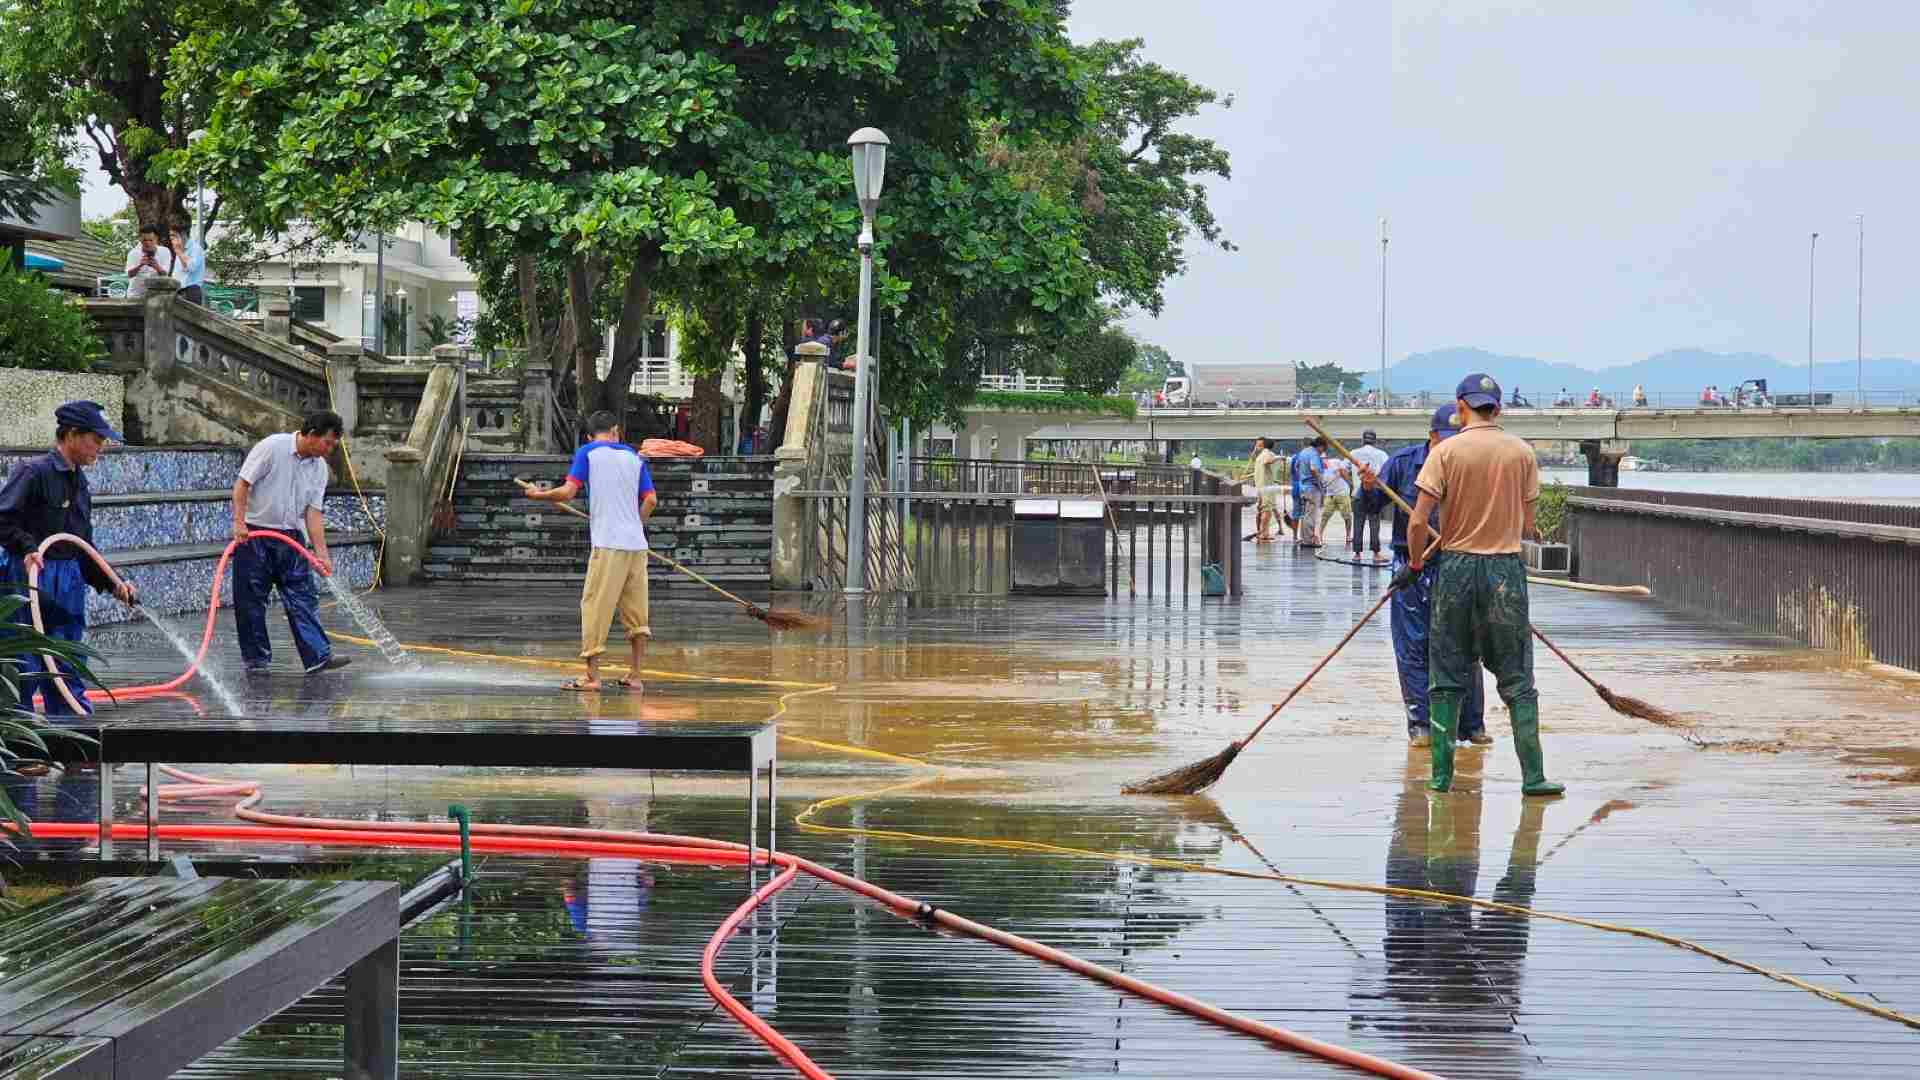 Trước đó, do ảnh hưởng của áp thấp nhiệt đới, trên địa bàn tỉnh Thừa Thiên Huế đã có mưa to đến rất to, gây ngập úng nhiều khu vực, đặc biệt tại cây cầu gỗ lim. 